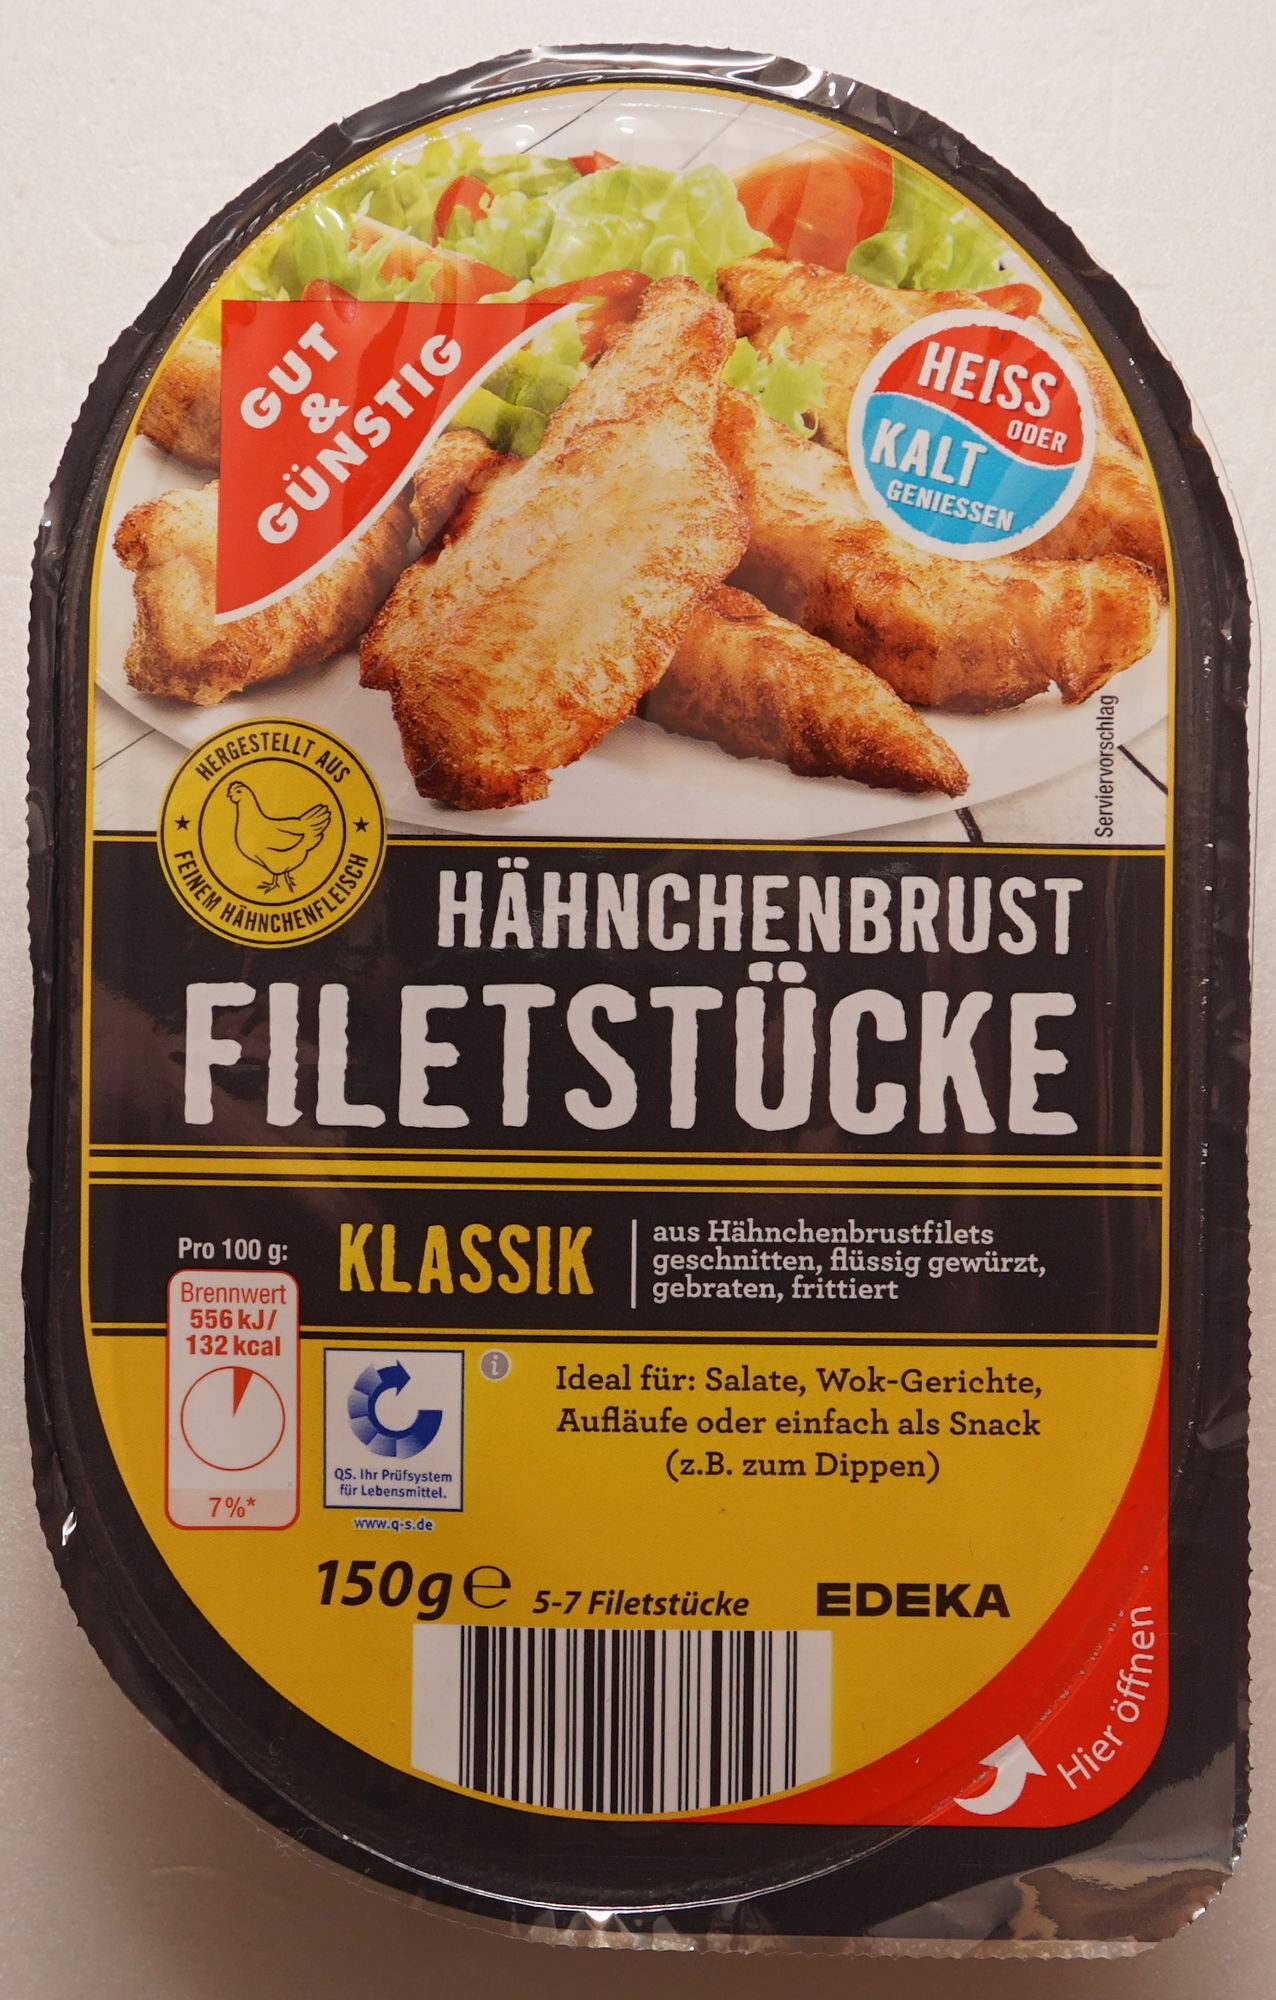 Hähnchenbrust Filetstücke Klassik - Produkt